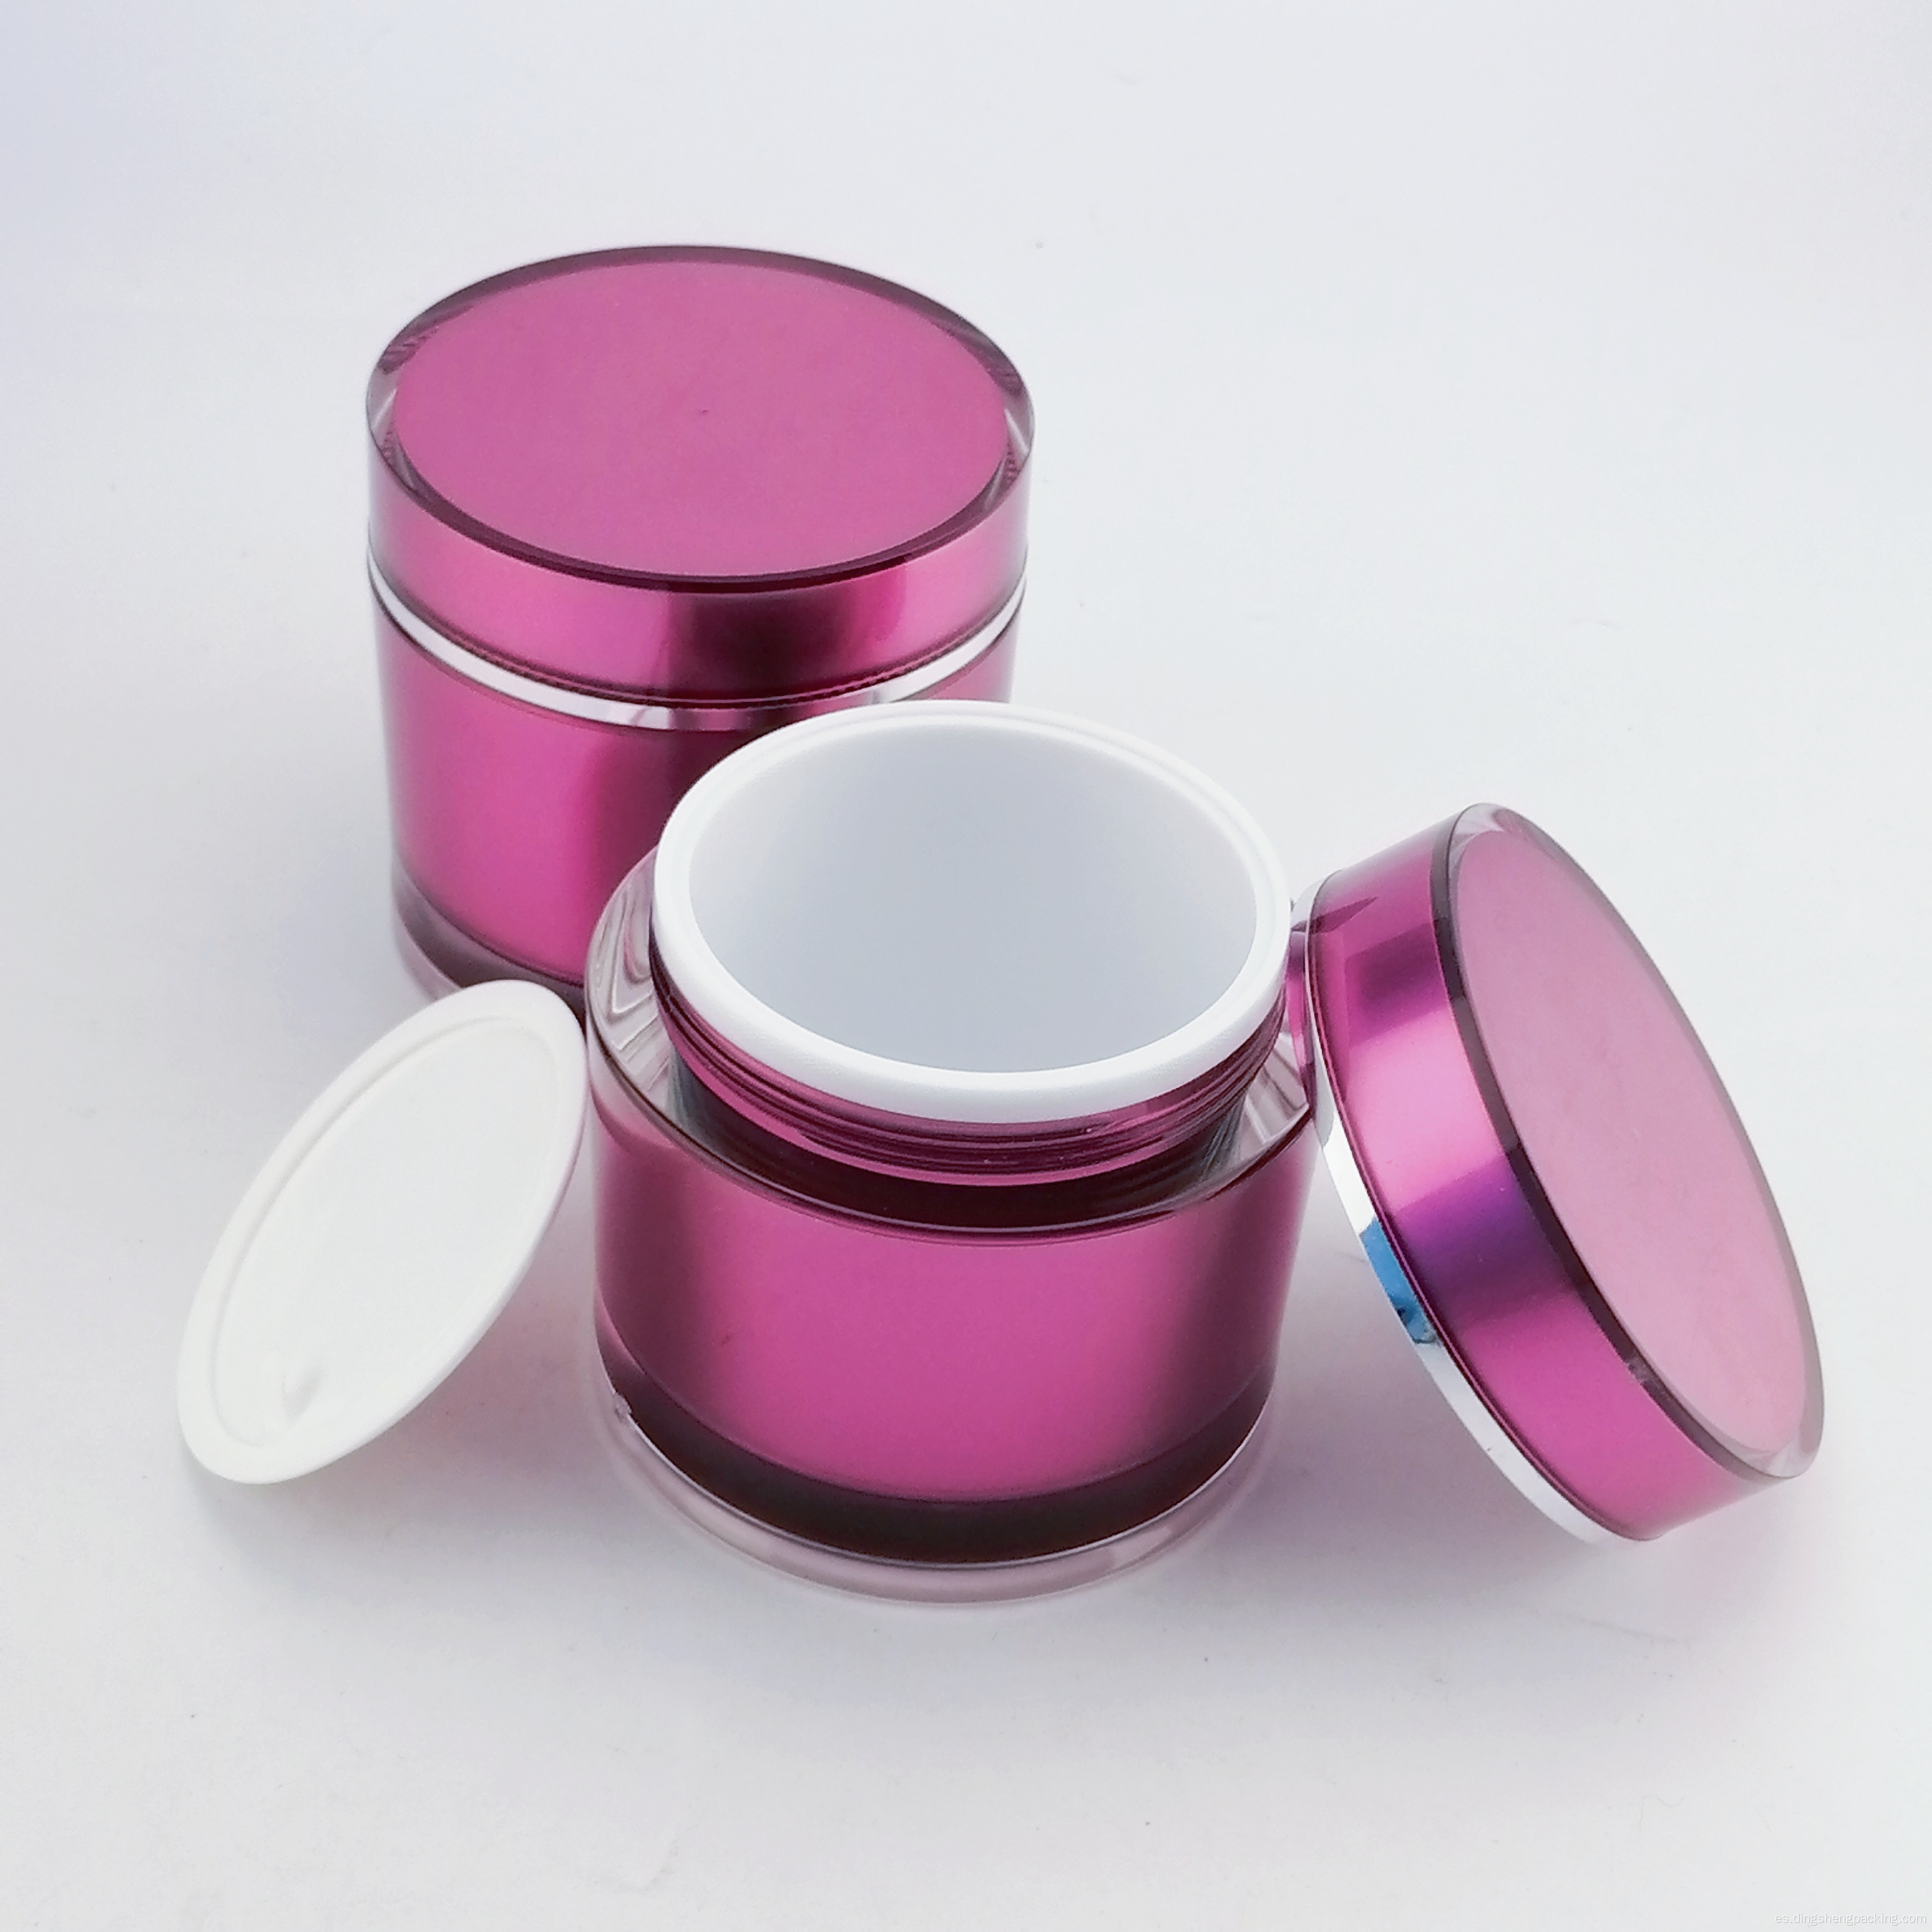 Jarra de cosmética de lujo jarra acrílica recipiente de crema acrílico de plástico personalizado